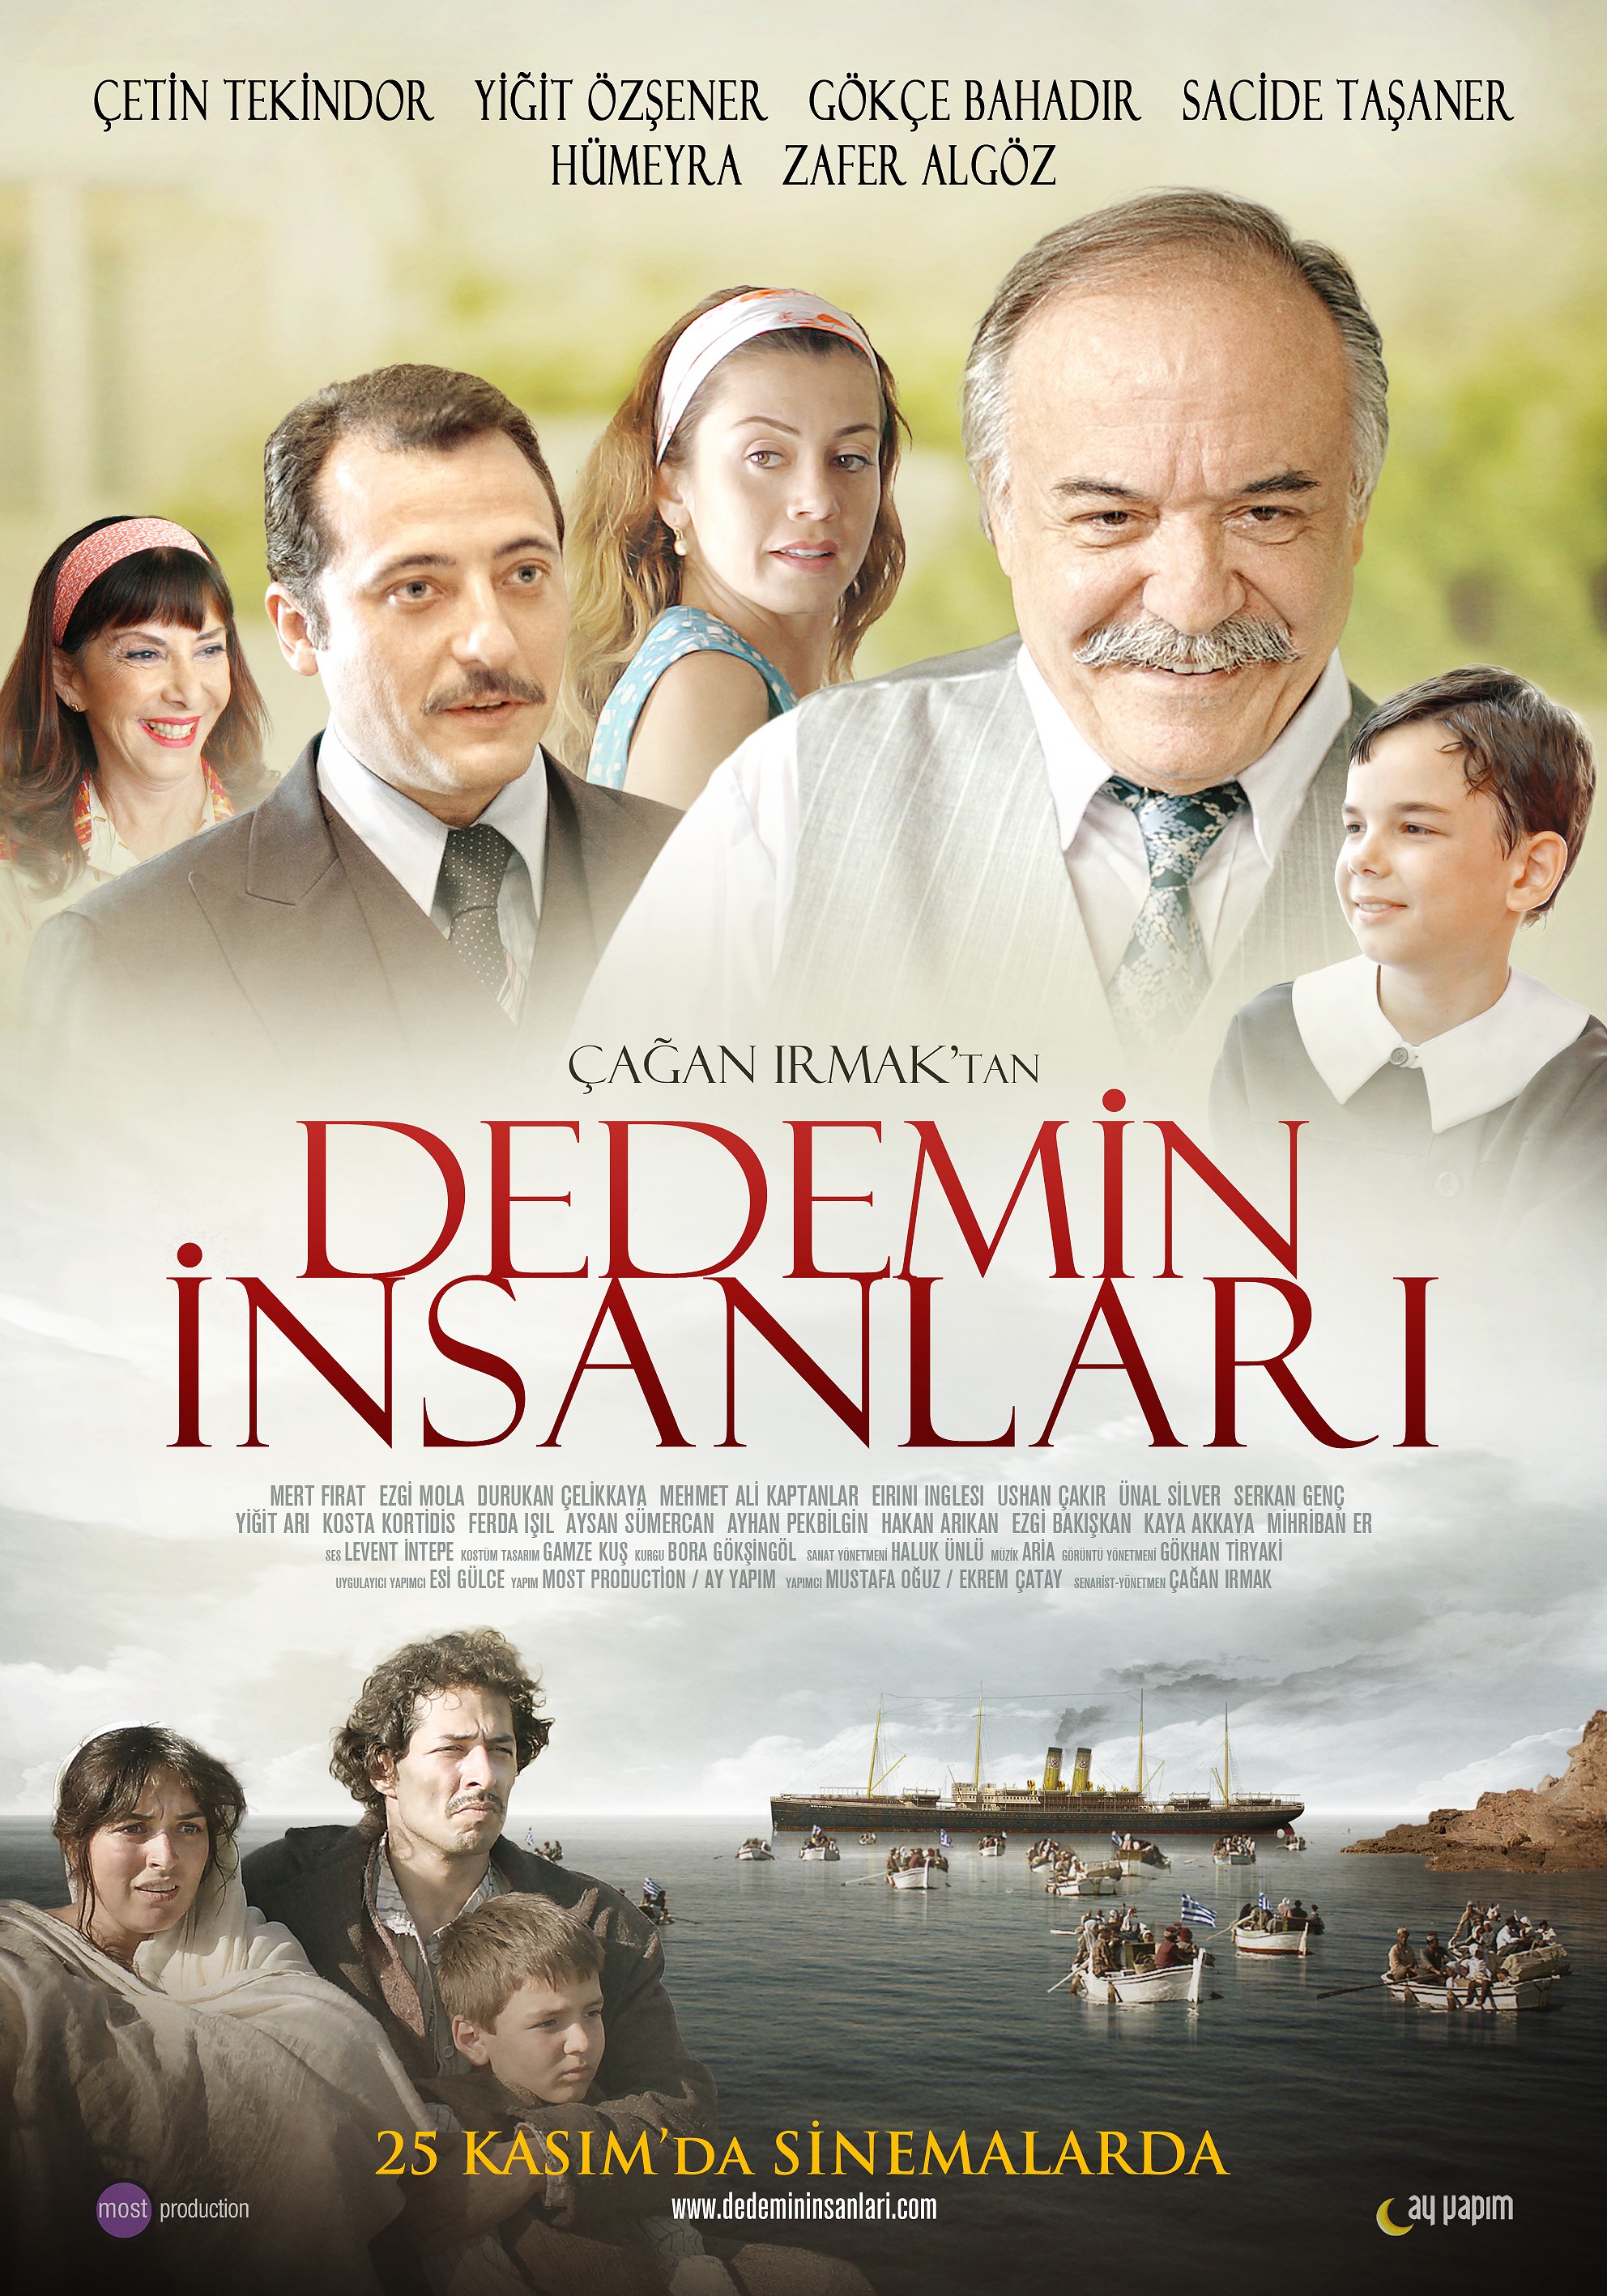 Mega Sized Movie Poster Image for Dedemin Insanlari 